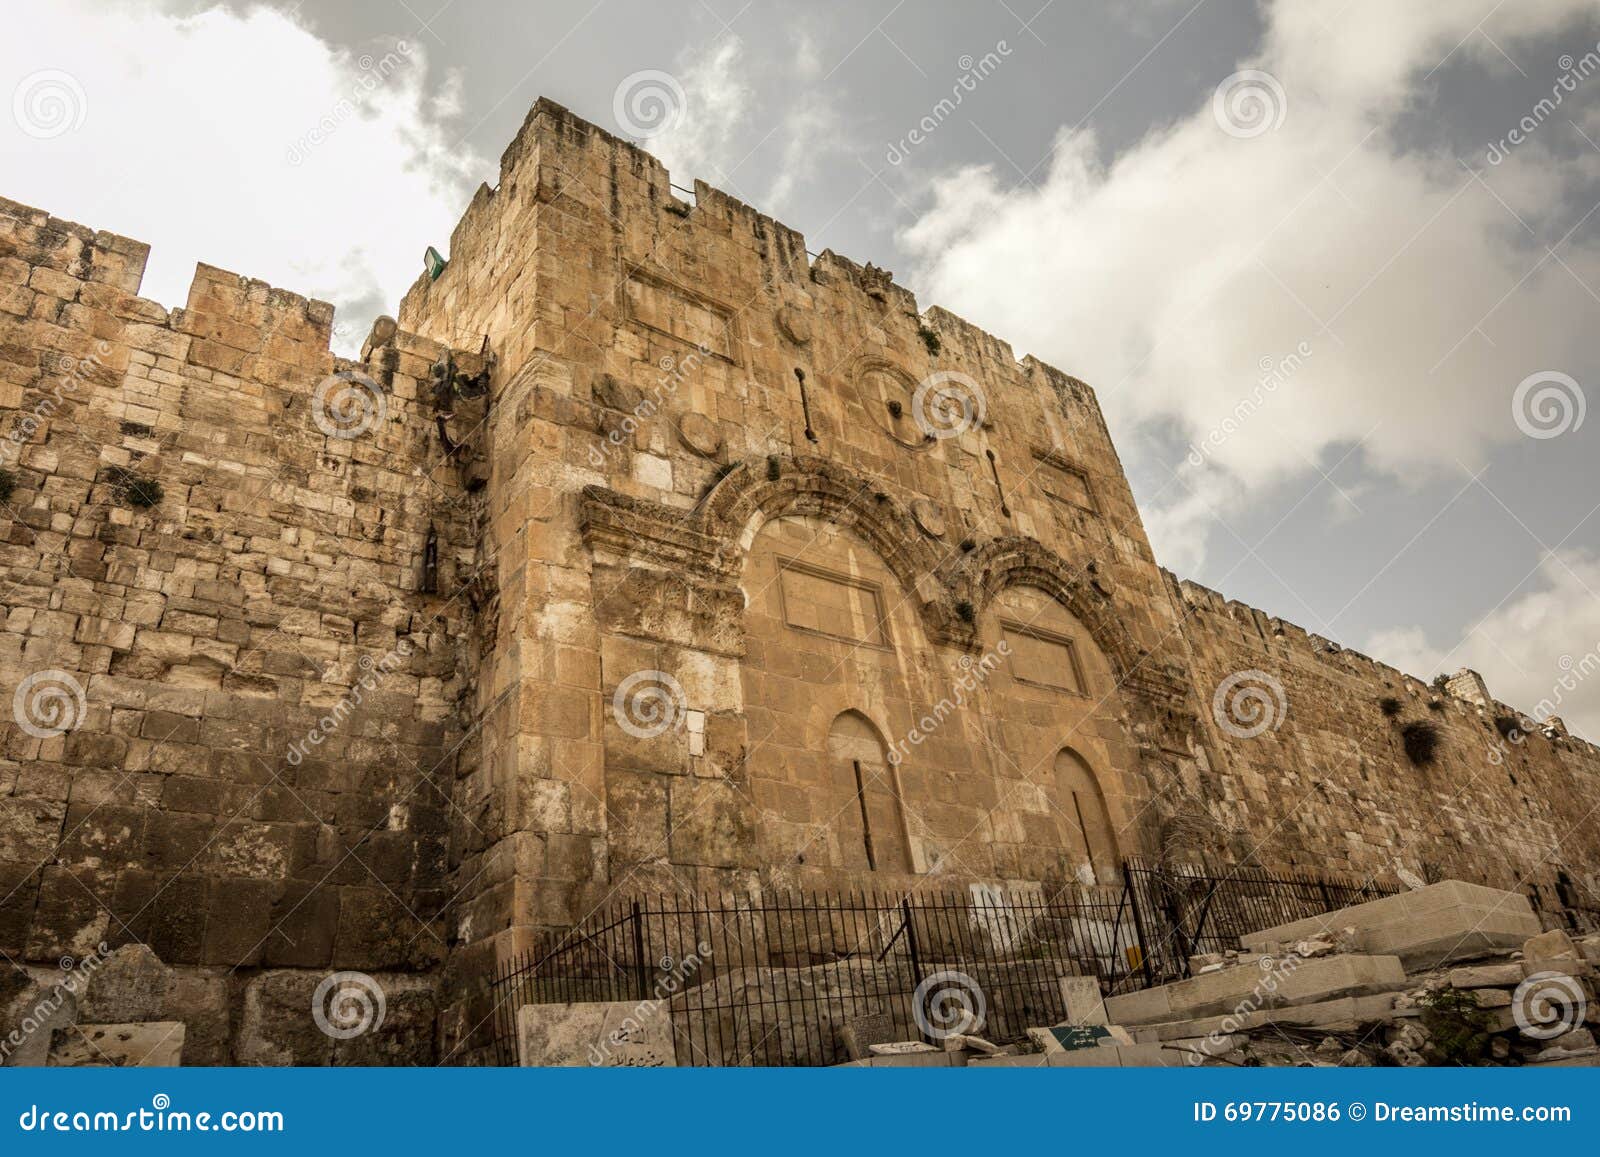 the golden gate, jerusalem, israel